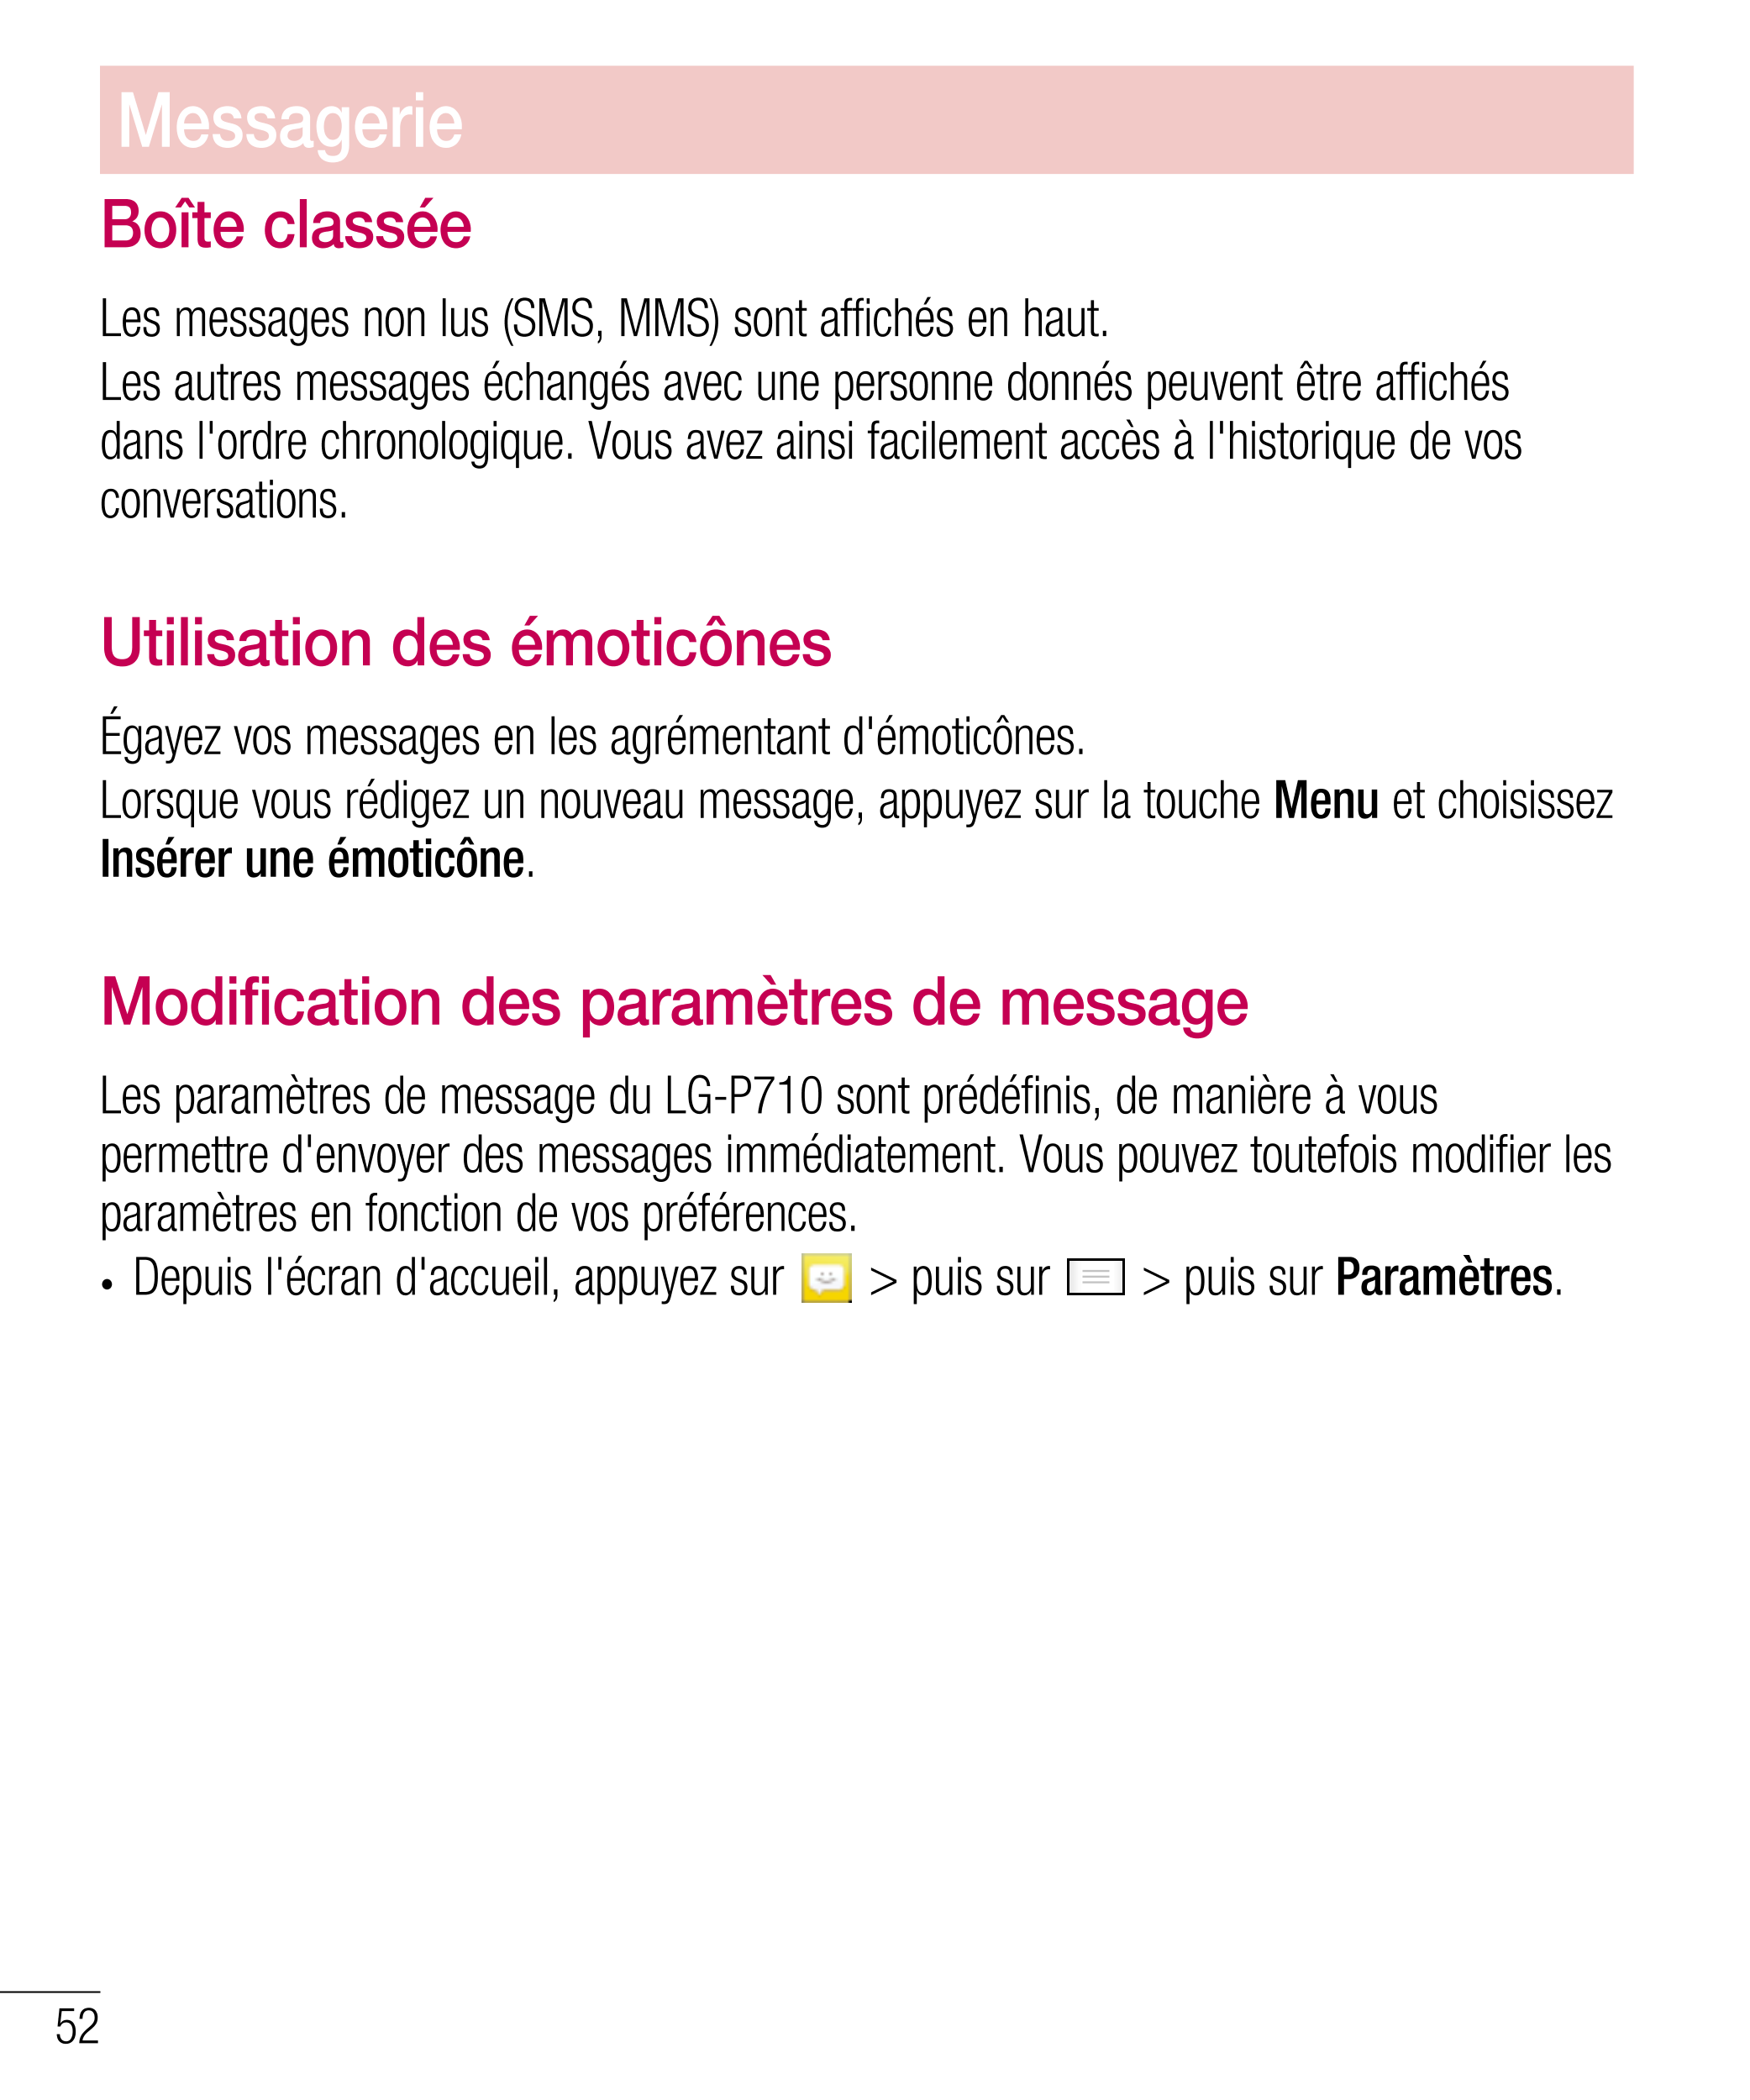 Messagerie
Boîte classée 
Les messages non lus (SMS, MMS) sont affichés en haut.
Les autres messages échangés avec une personne 